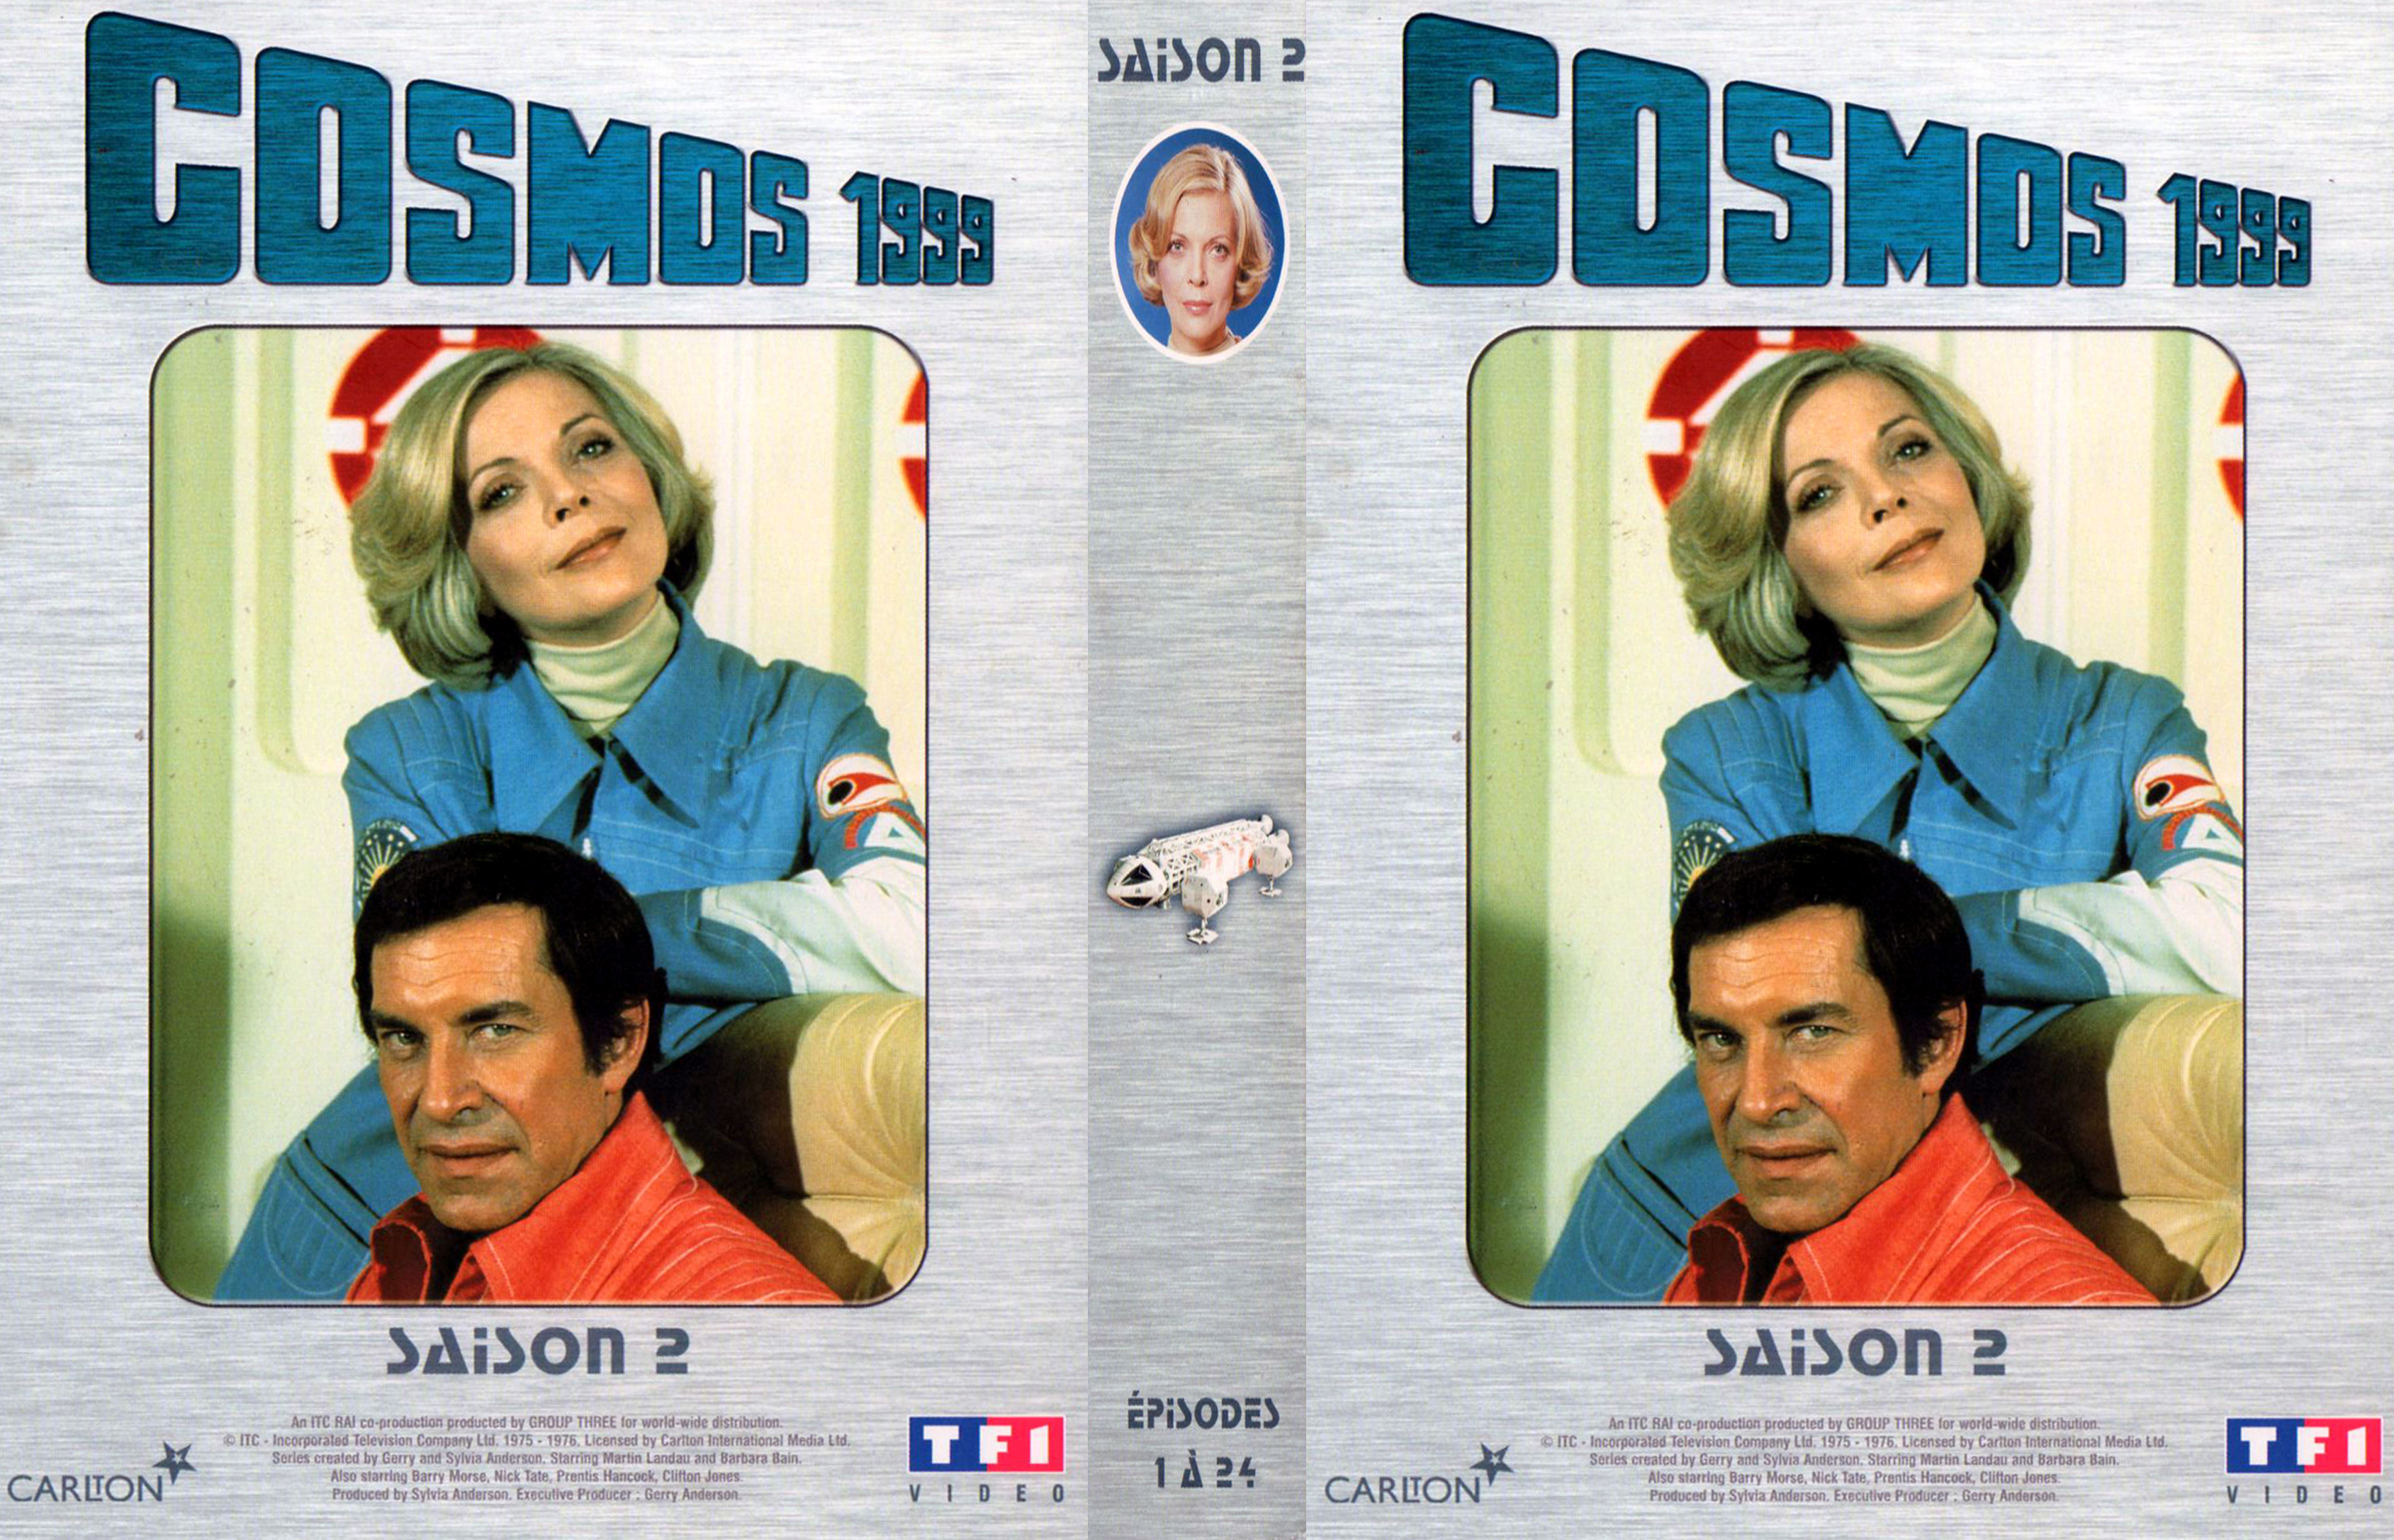 Jaquette DVD Cosmos 1999 saison 2 COFFRET